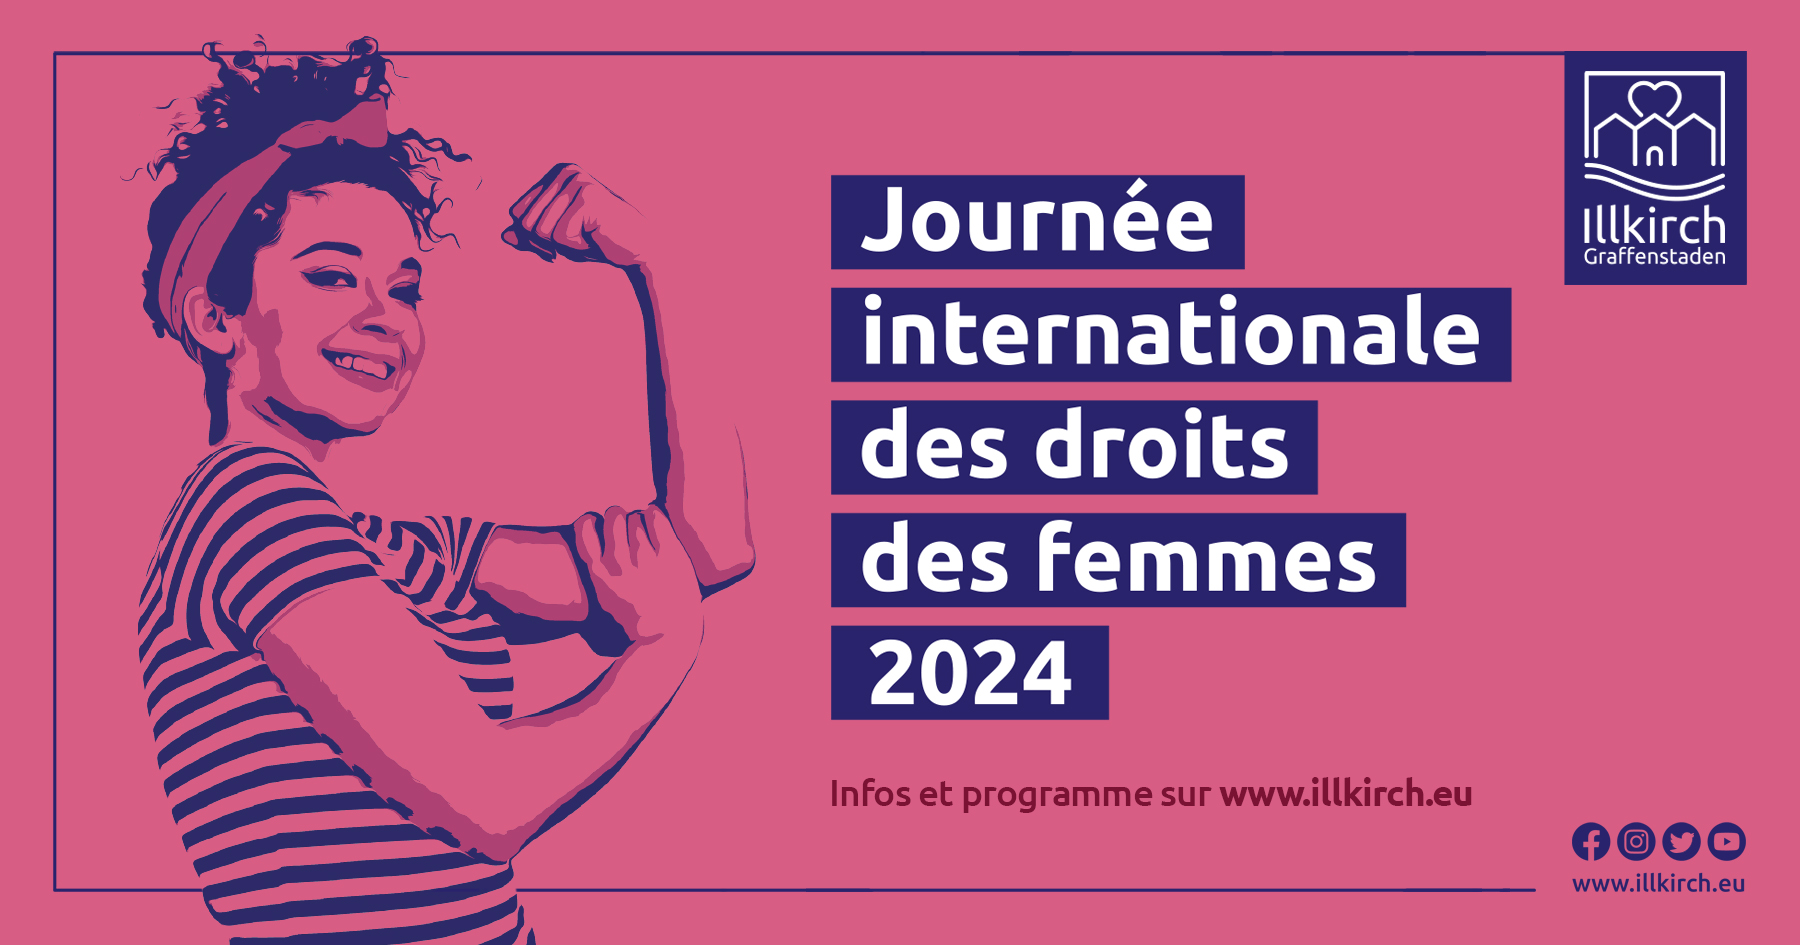 Journée internationale des droits des femmes 2024 à Illkirch-Graffenstaden